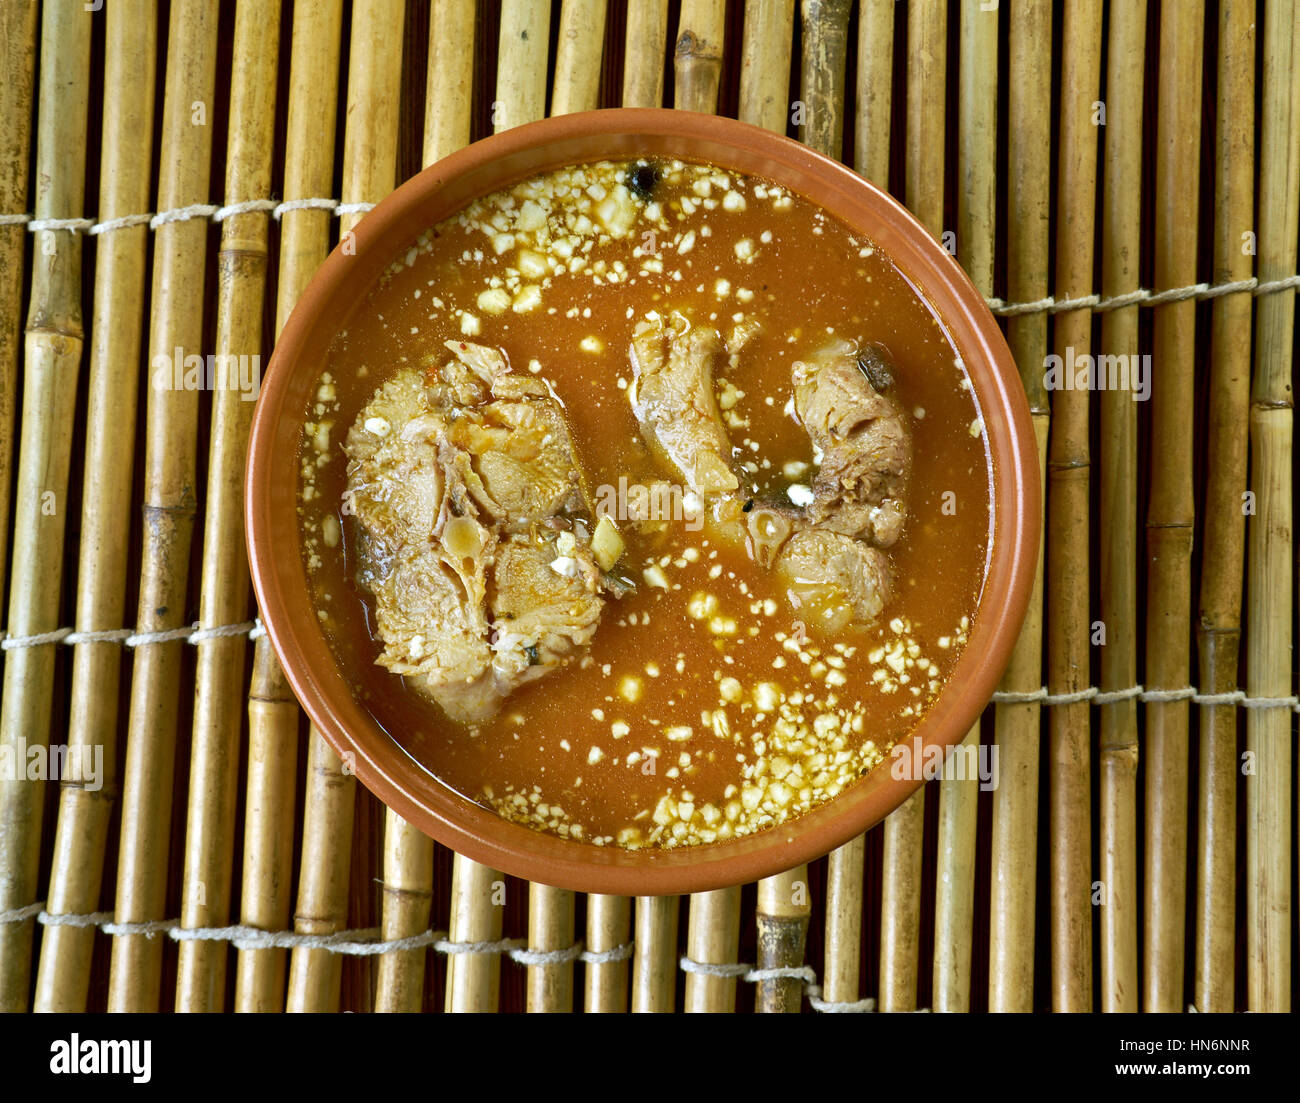 Curry de mangue Poisson, Poisson cuit dans une sauce à base de lait de coco avec mangue Banque D'Images